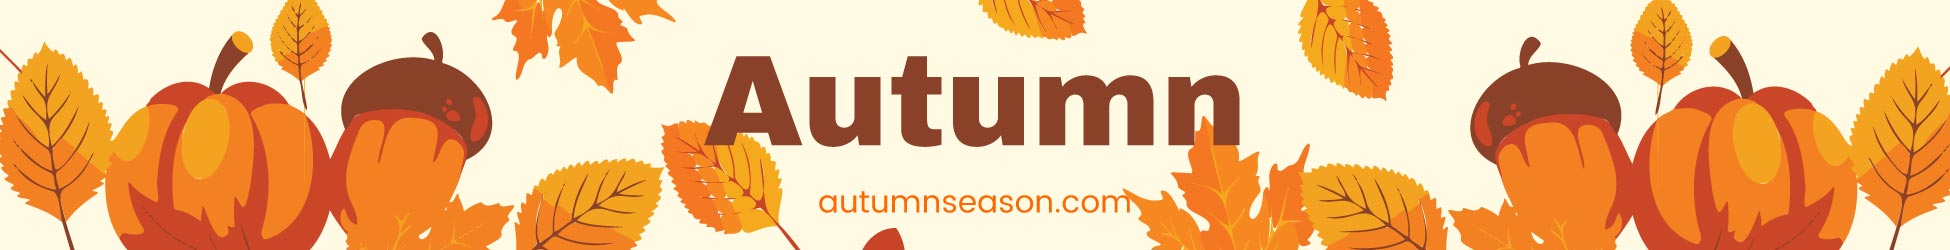 Autumn Website Banner